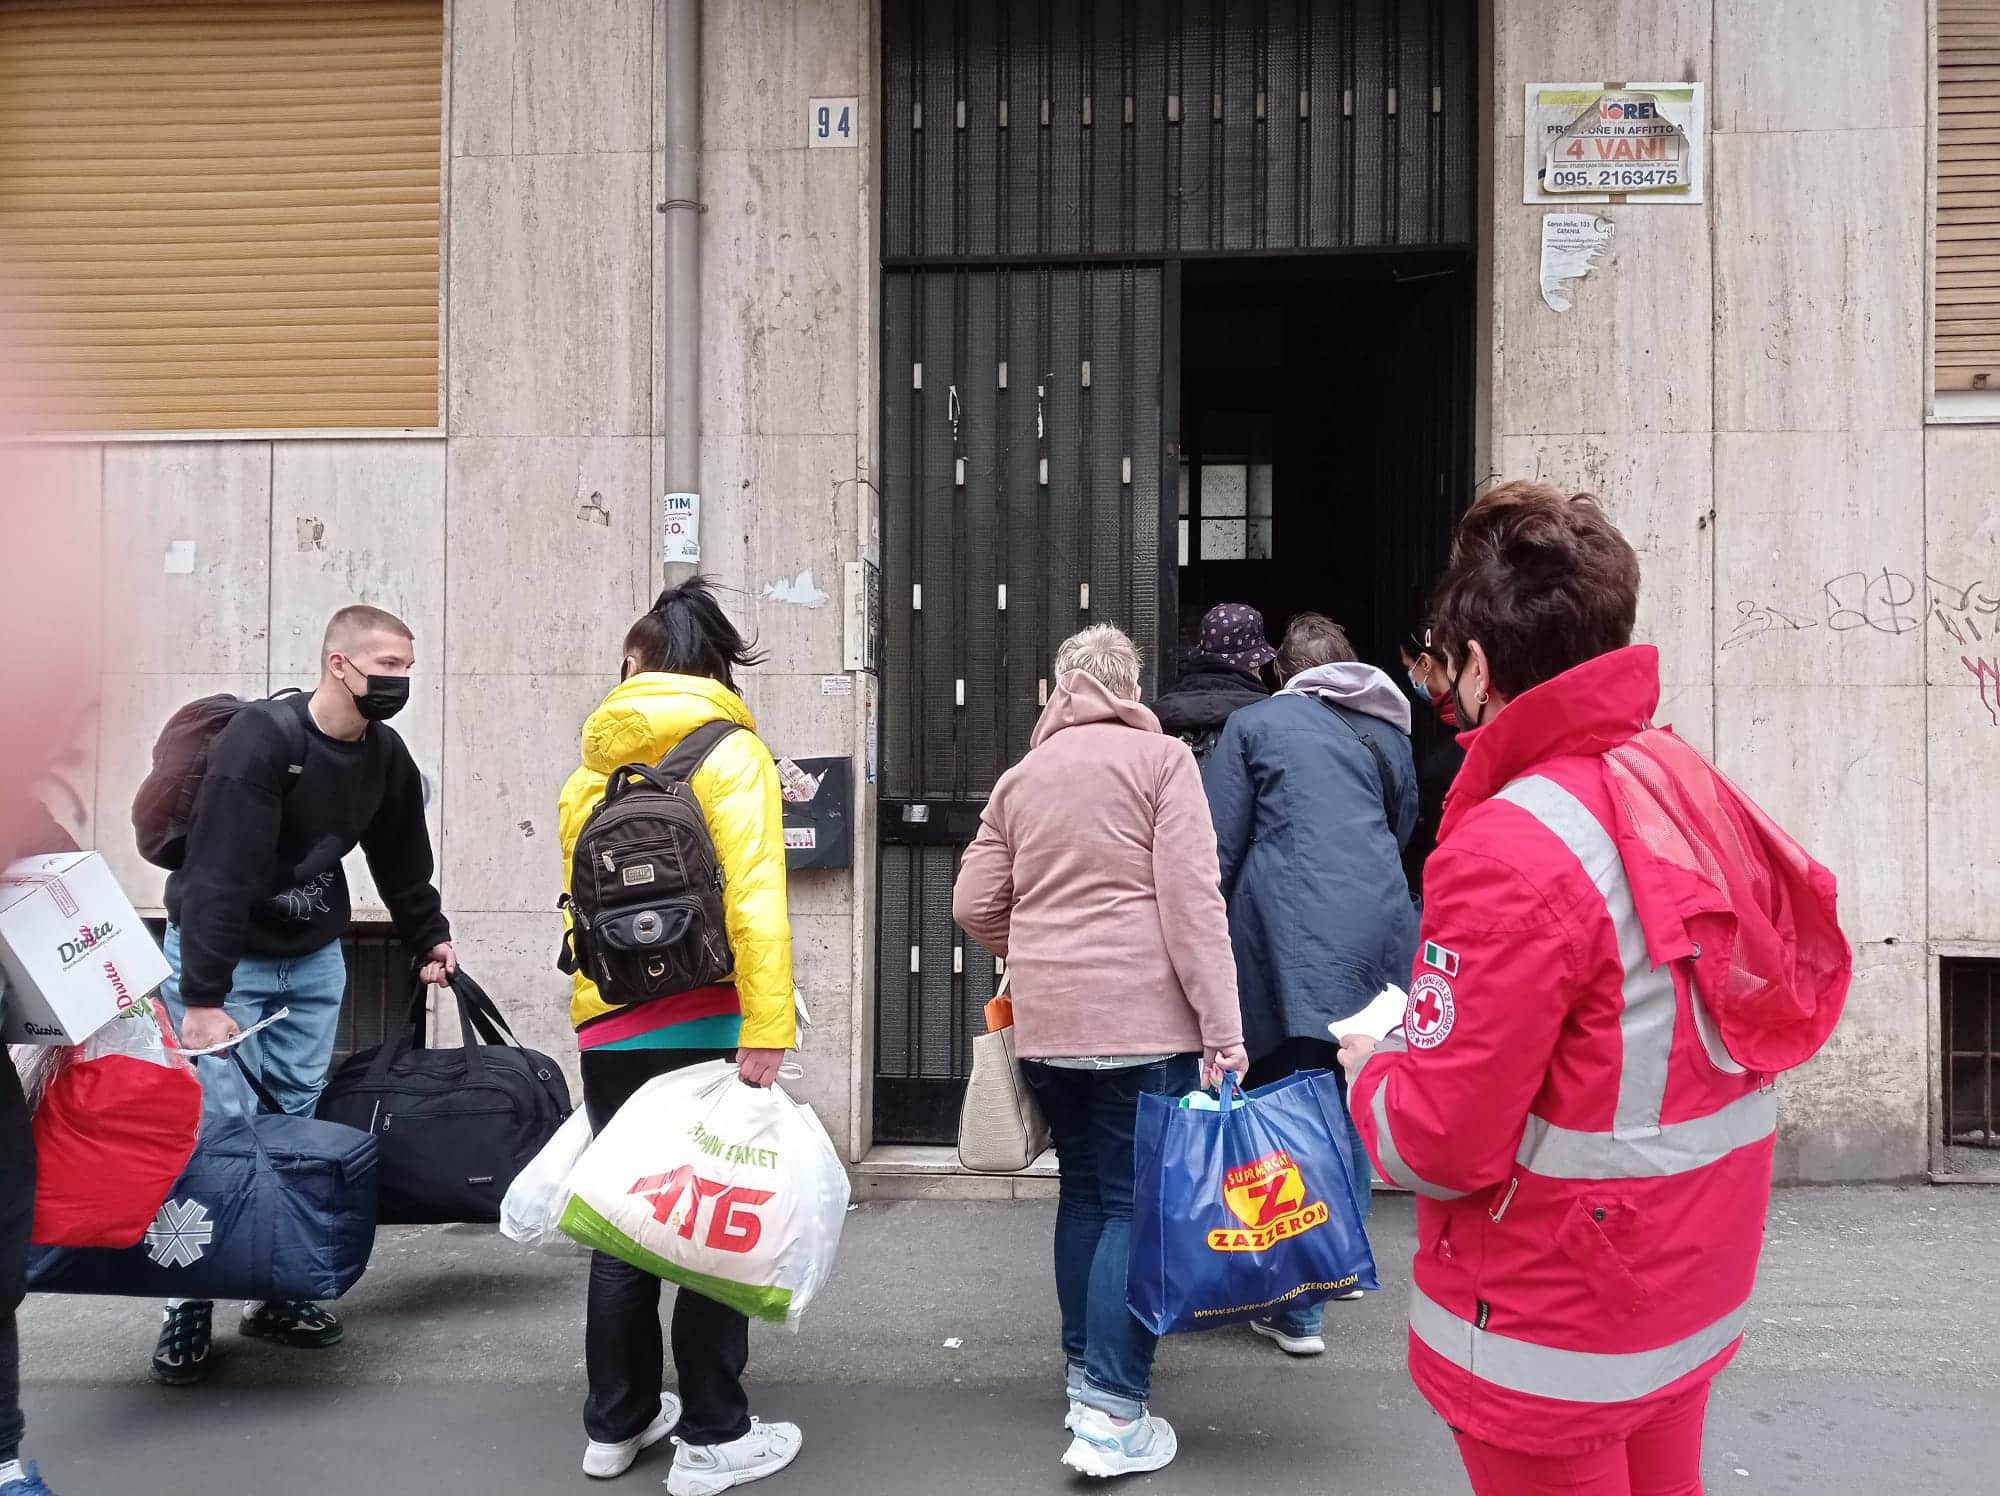 Catania, arrivate le prime famiglie ucraine e accompagnate nelle strutture disponibili – VIDEO e FOTO